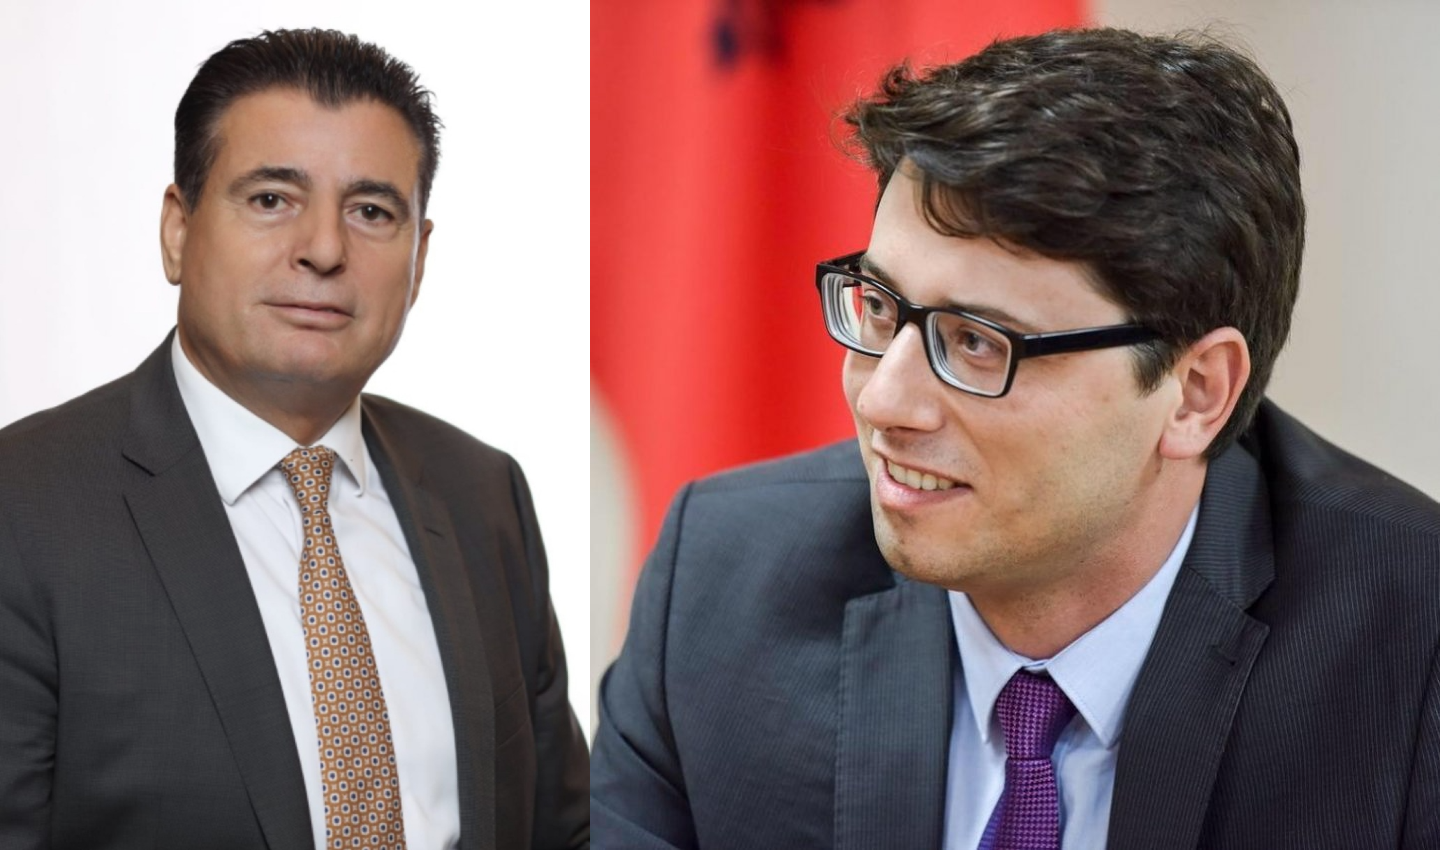 Ministri Murati i del në ndihmë Bahtirit: Ia zhbllokon sistemin e komunës për zotime dhe pagesa